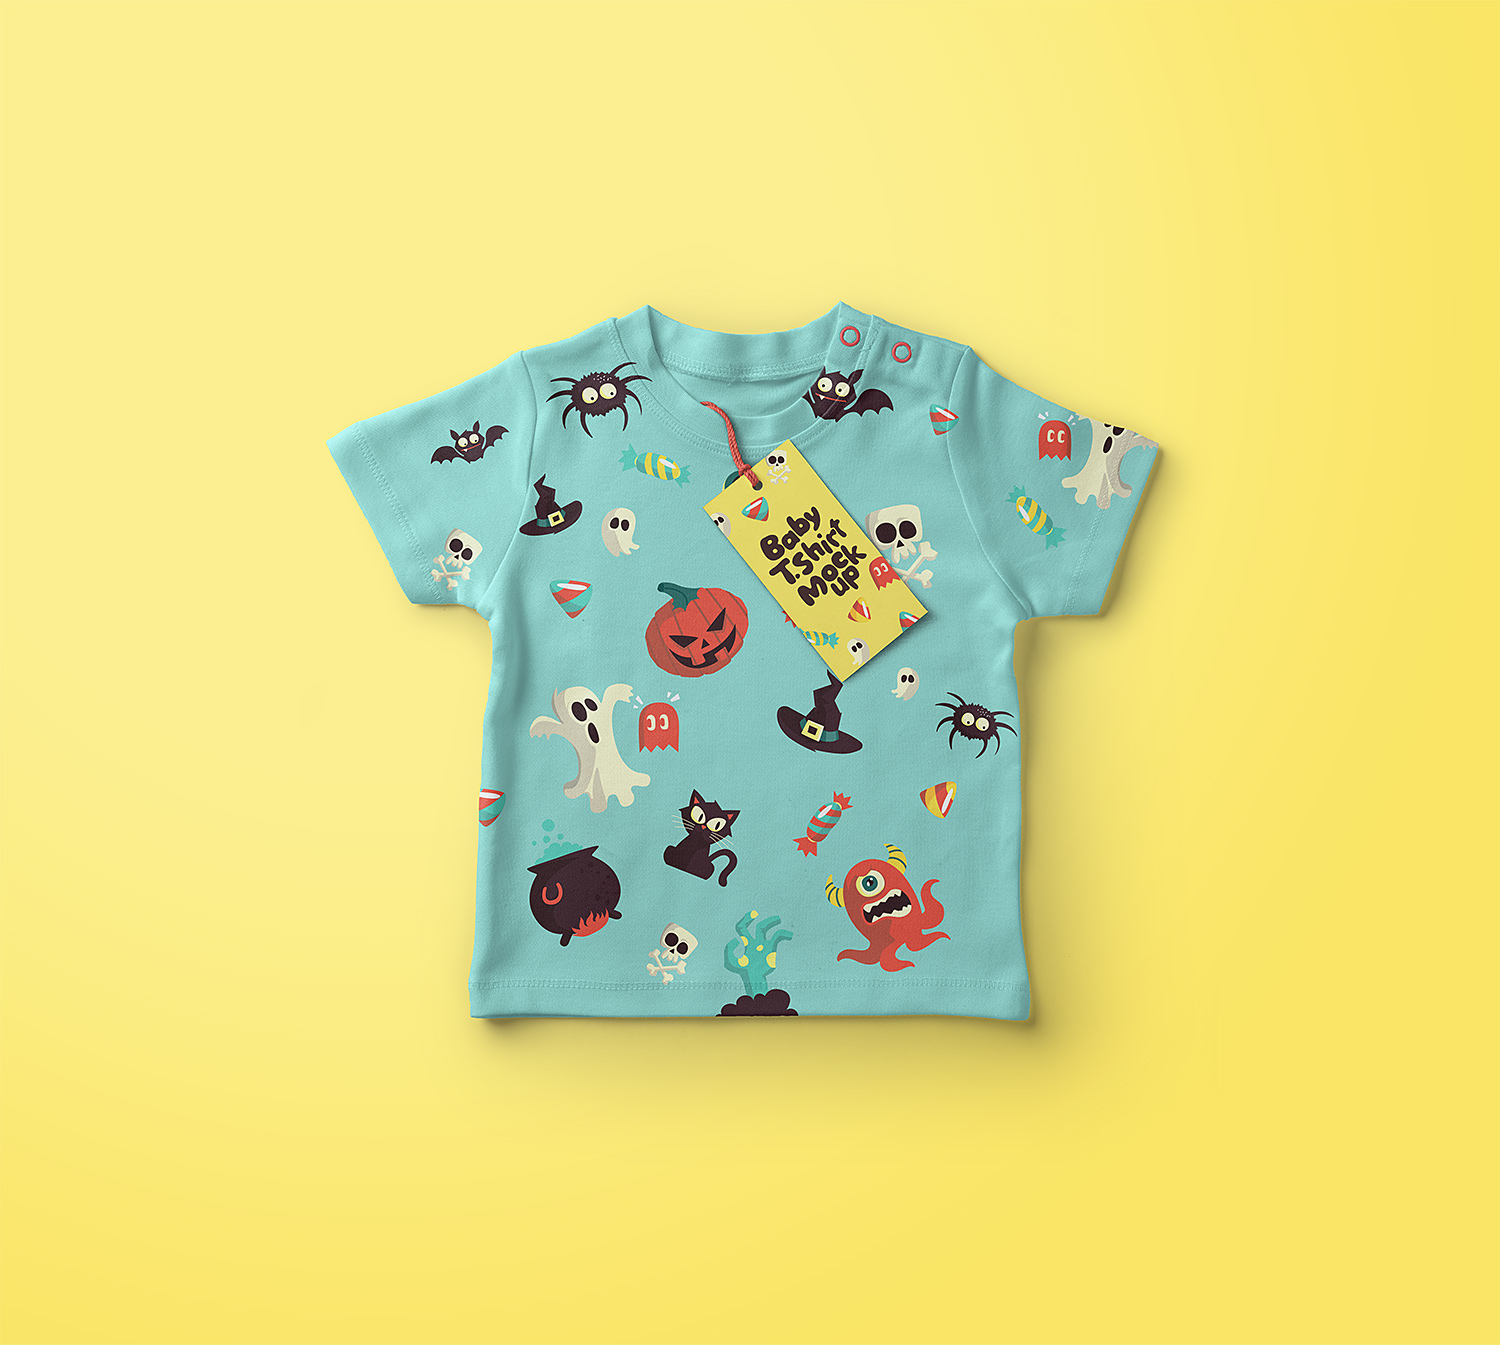 Download Baby T-Shirt Free Mockup | Mockup World HQ